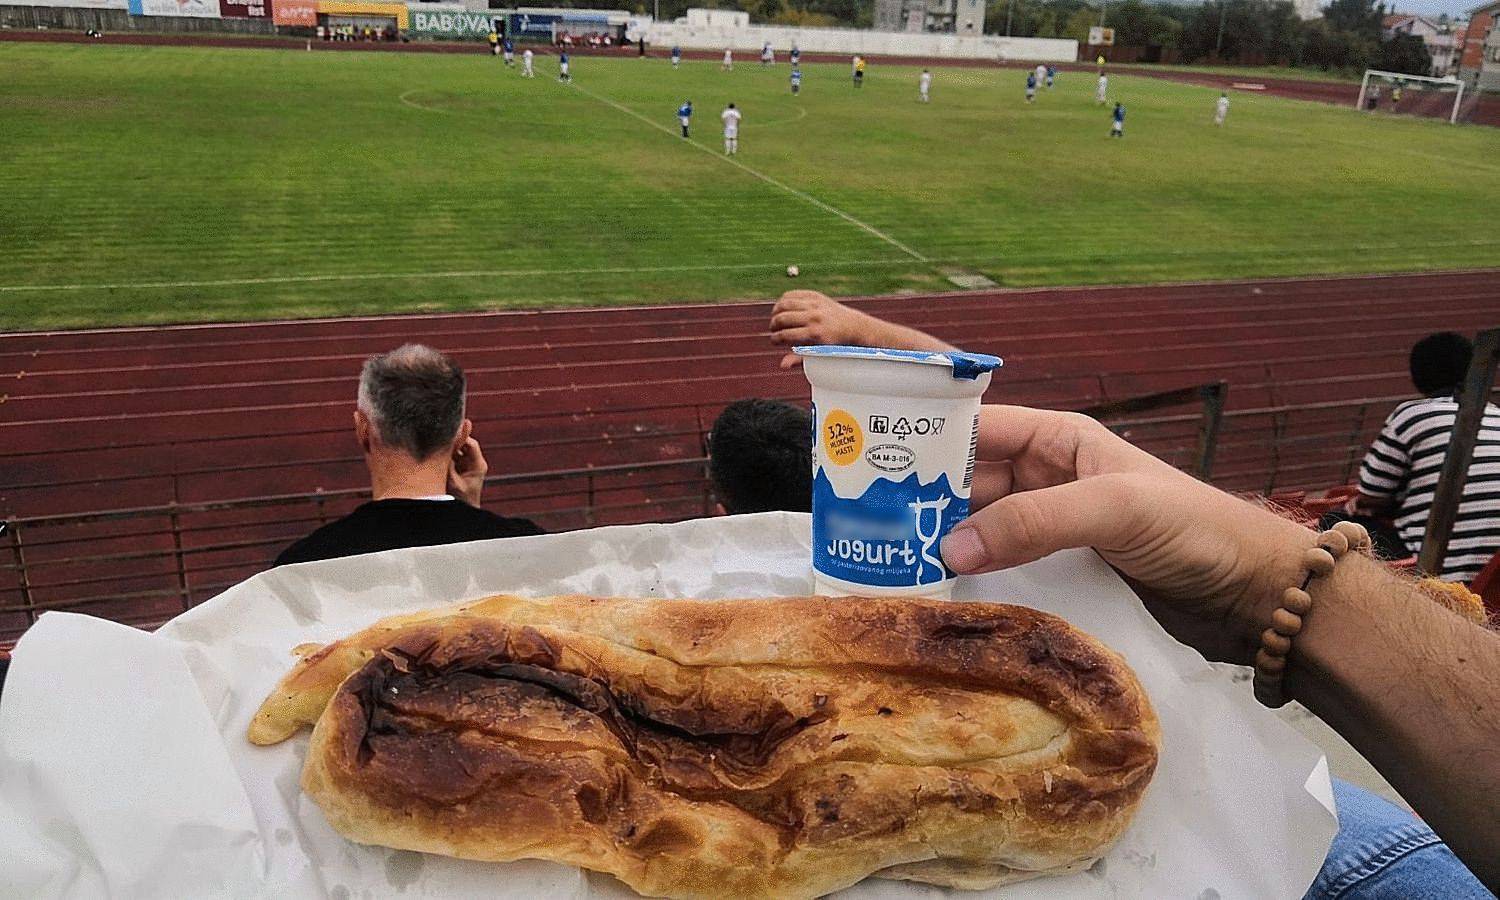 A što će ti više? Burek, jogurt i radost nogometa u Hercegovini